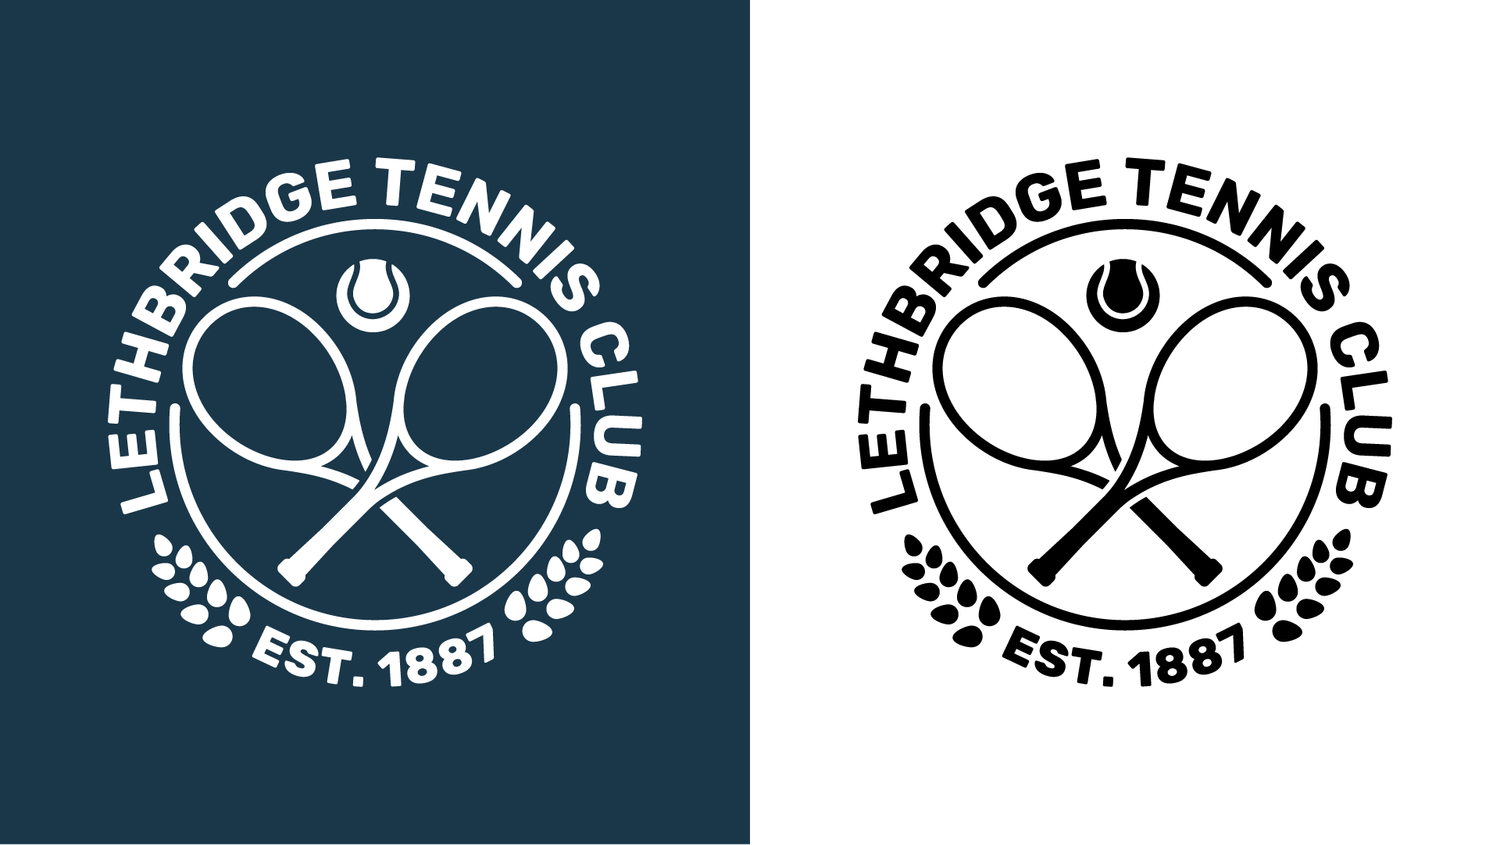 Lethbridge Tennis Club